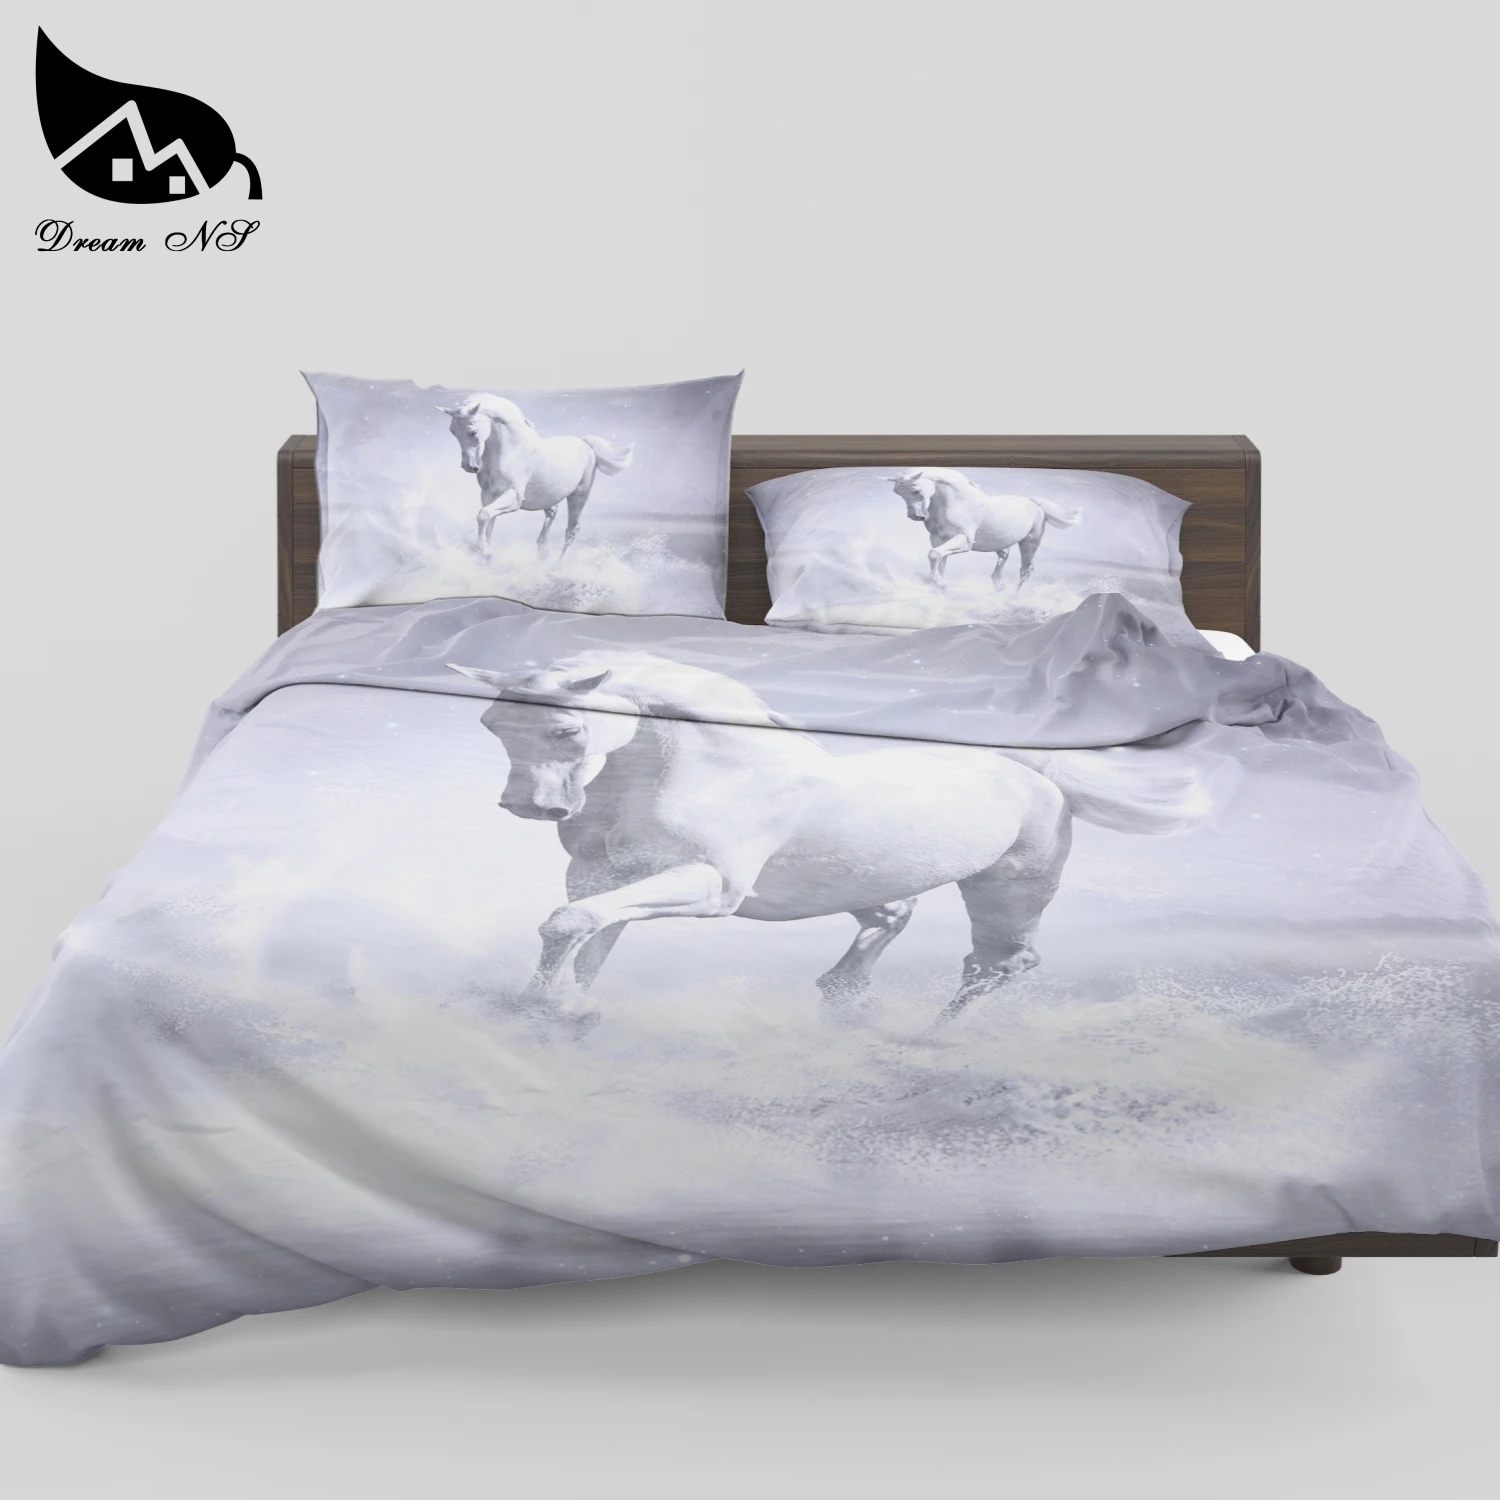 Dream NS постельные принадлежности набор Профессиональный пользовательское изображение Высокое разрешение фотографии бегущая лошадь постельное белье кровать номер домашний текстиль SMY36